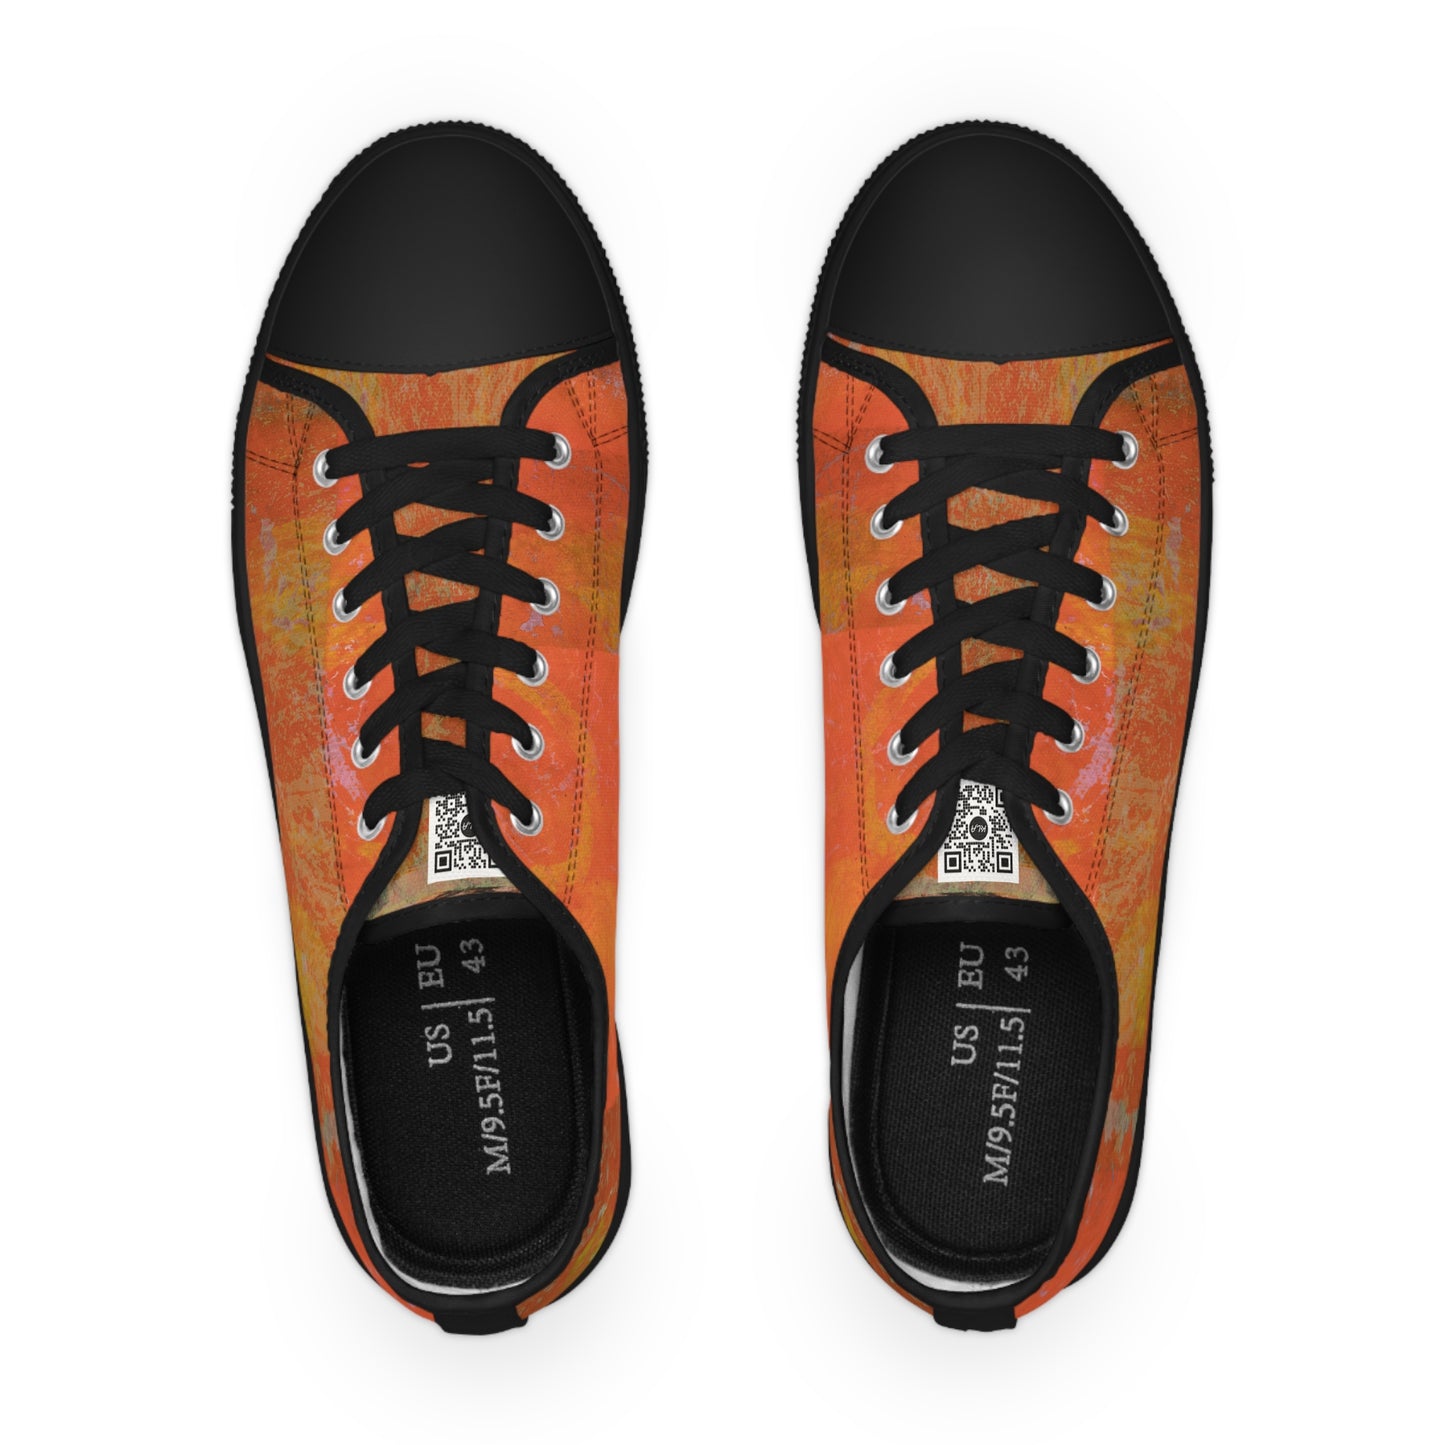 Men's Low Top Sneakers - 02863 US 14 Black sole